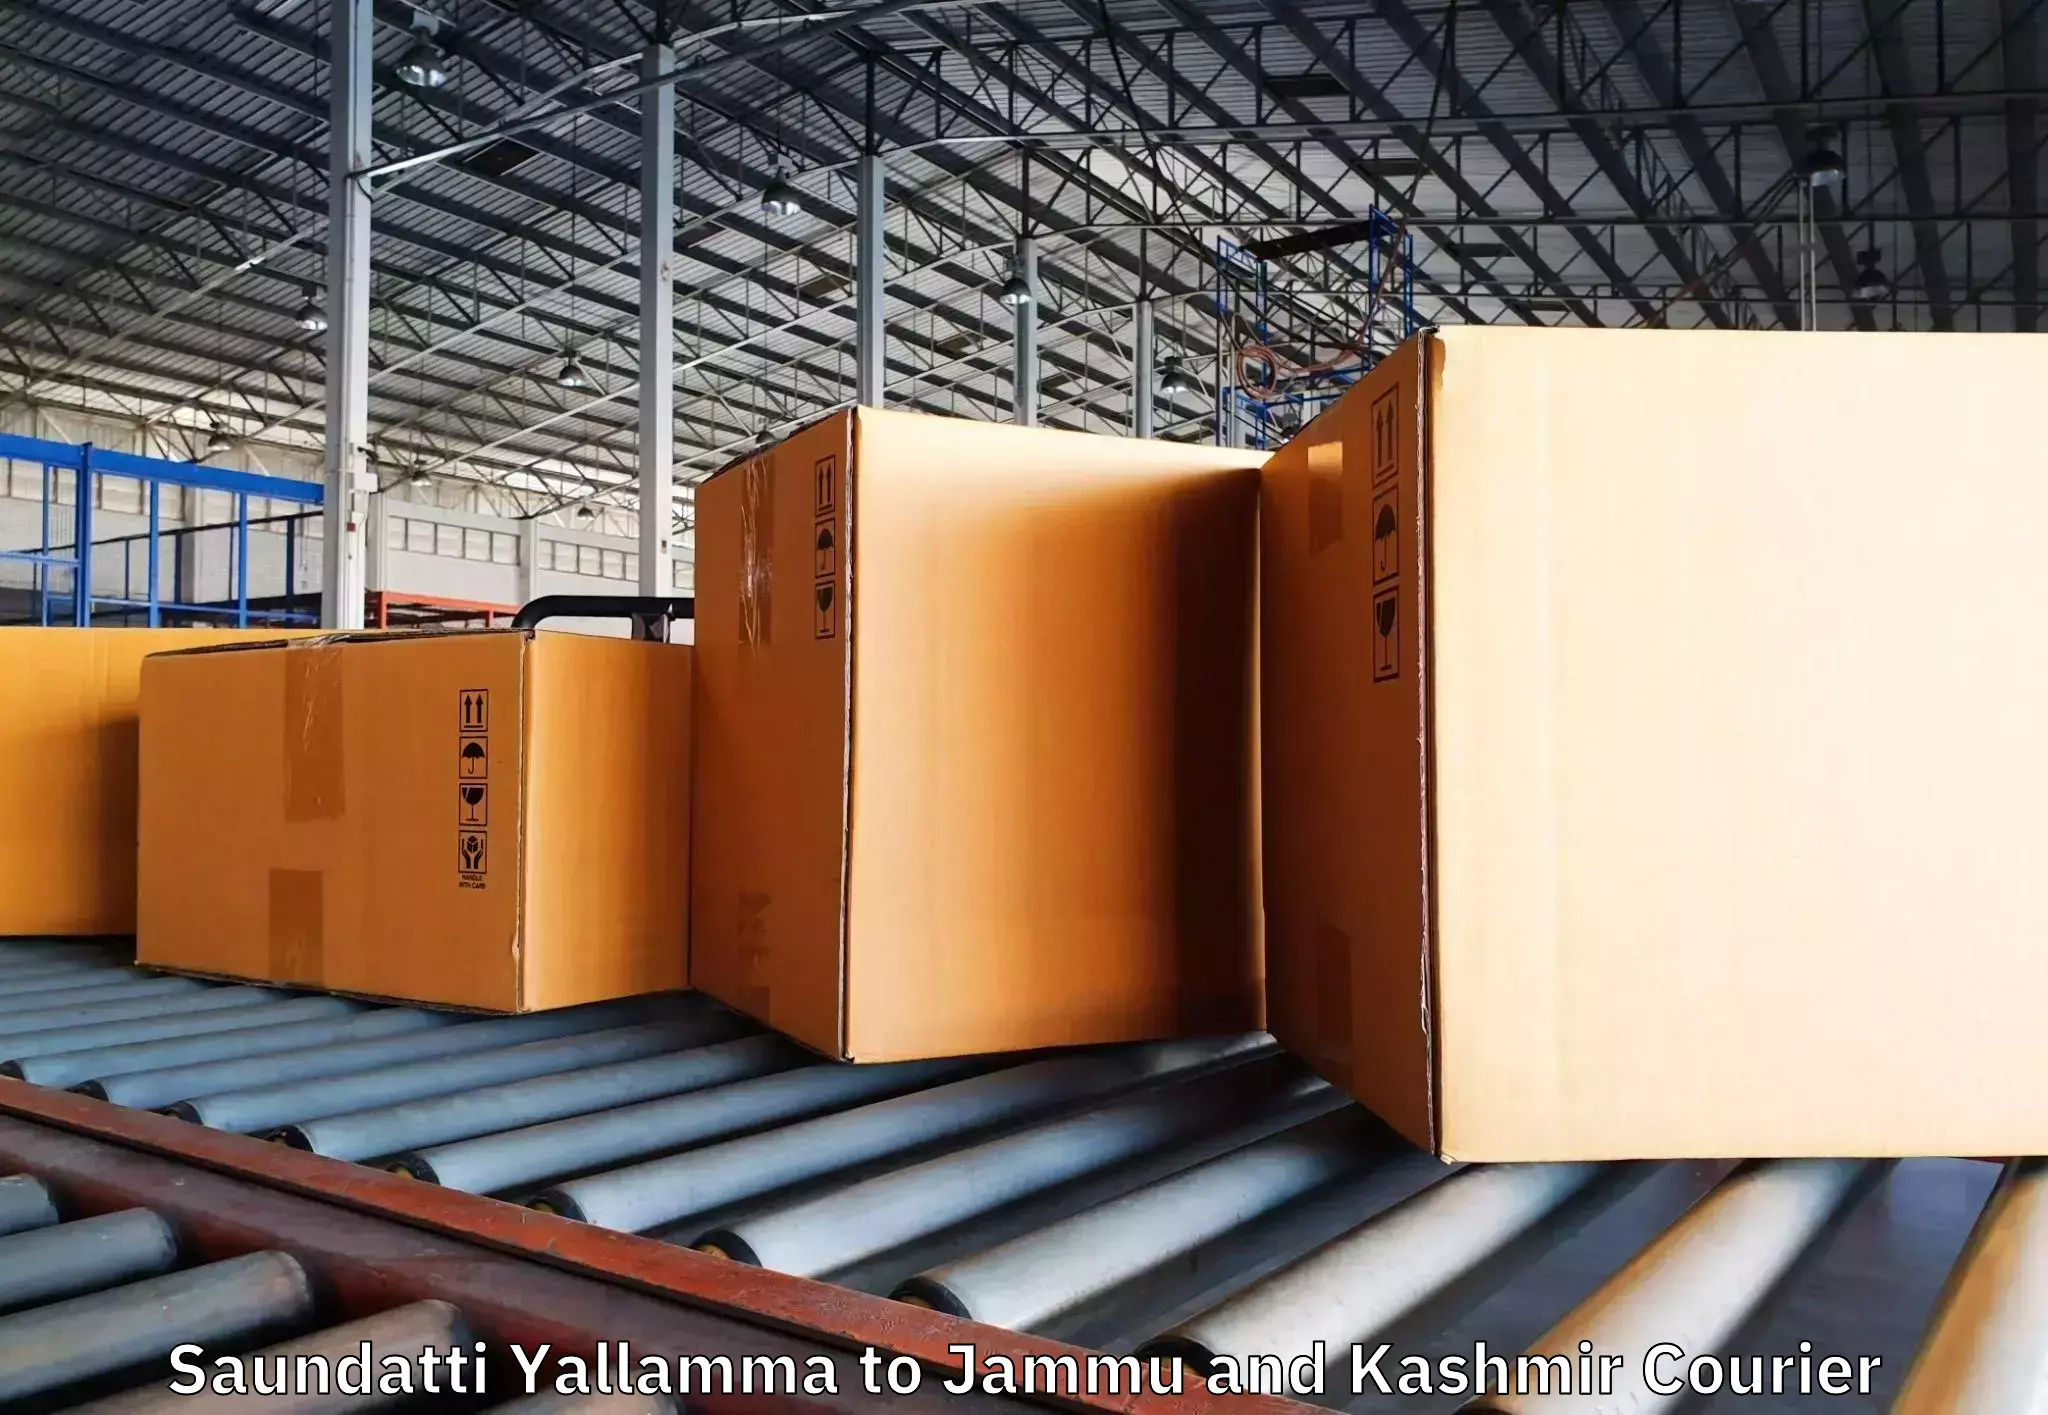 Professional moving company Saundatti Yallamma to Kupwara